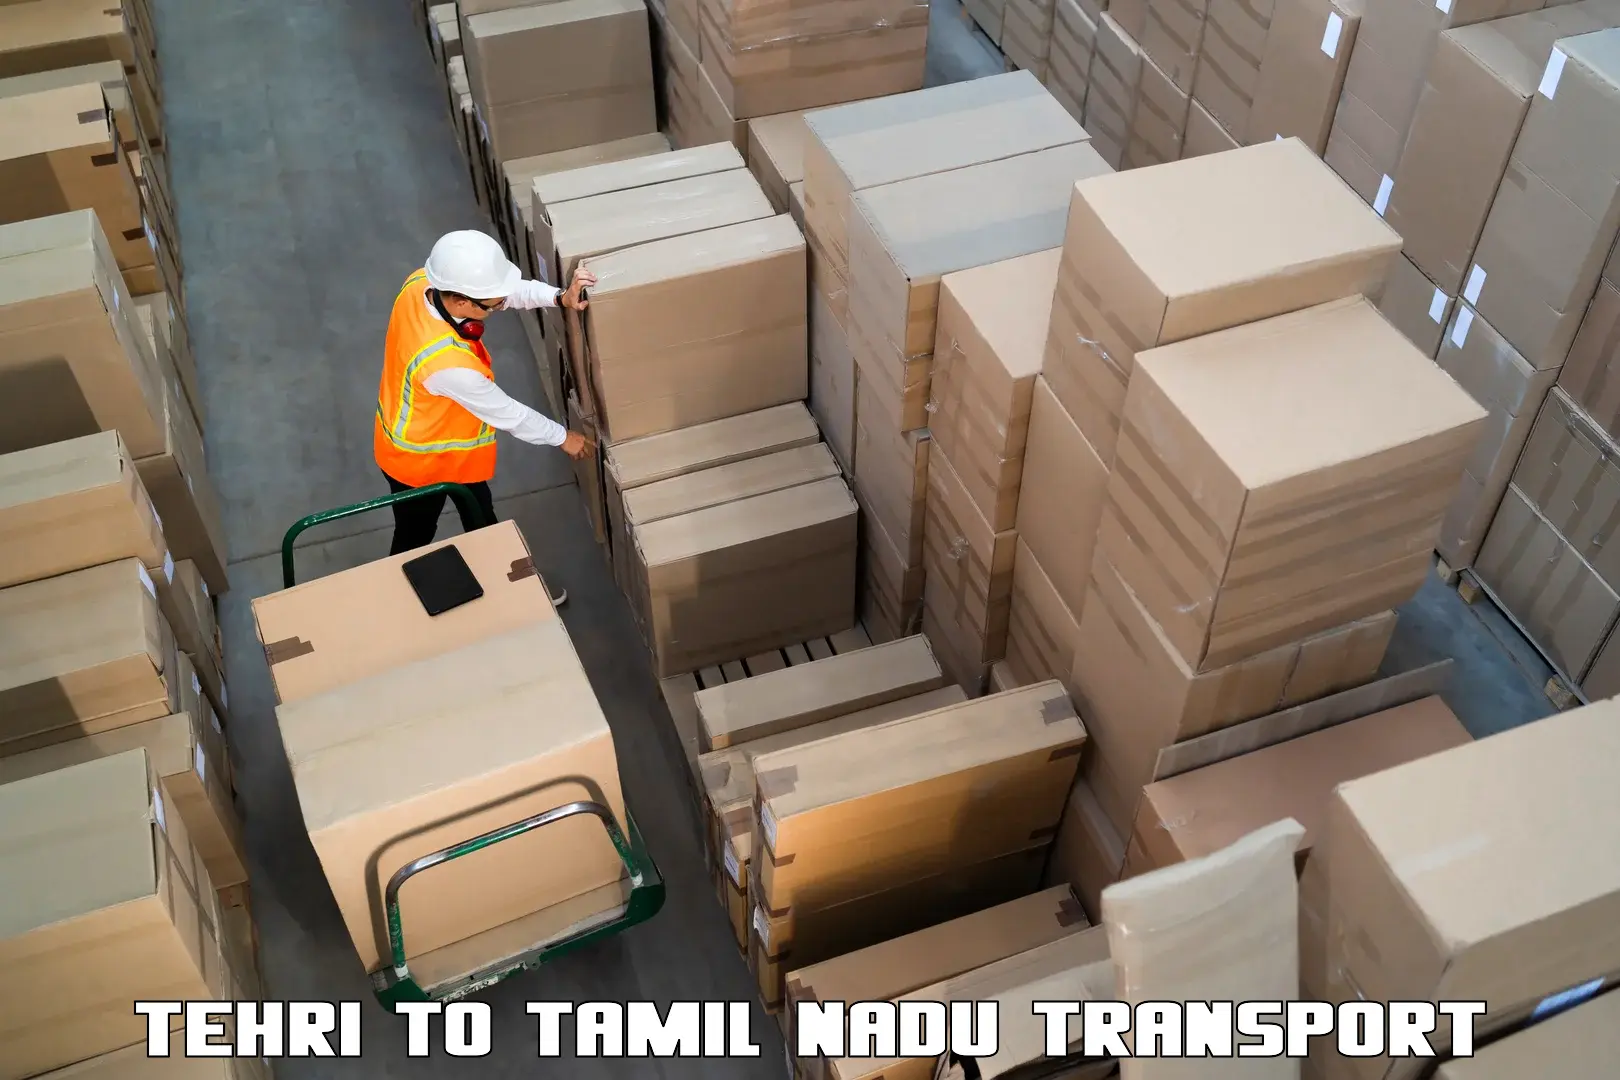 Intercity transport Tehri to Chennai Port